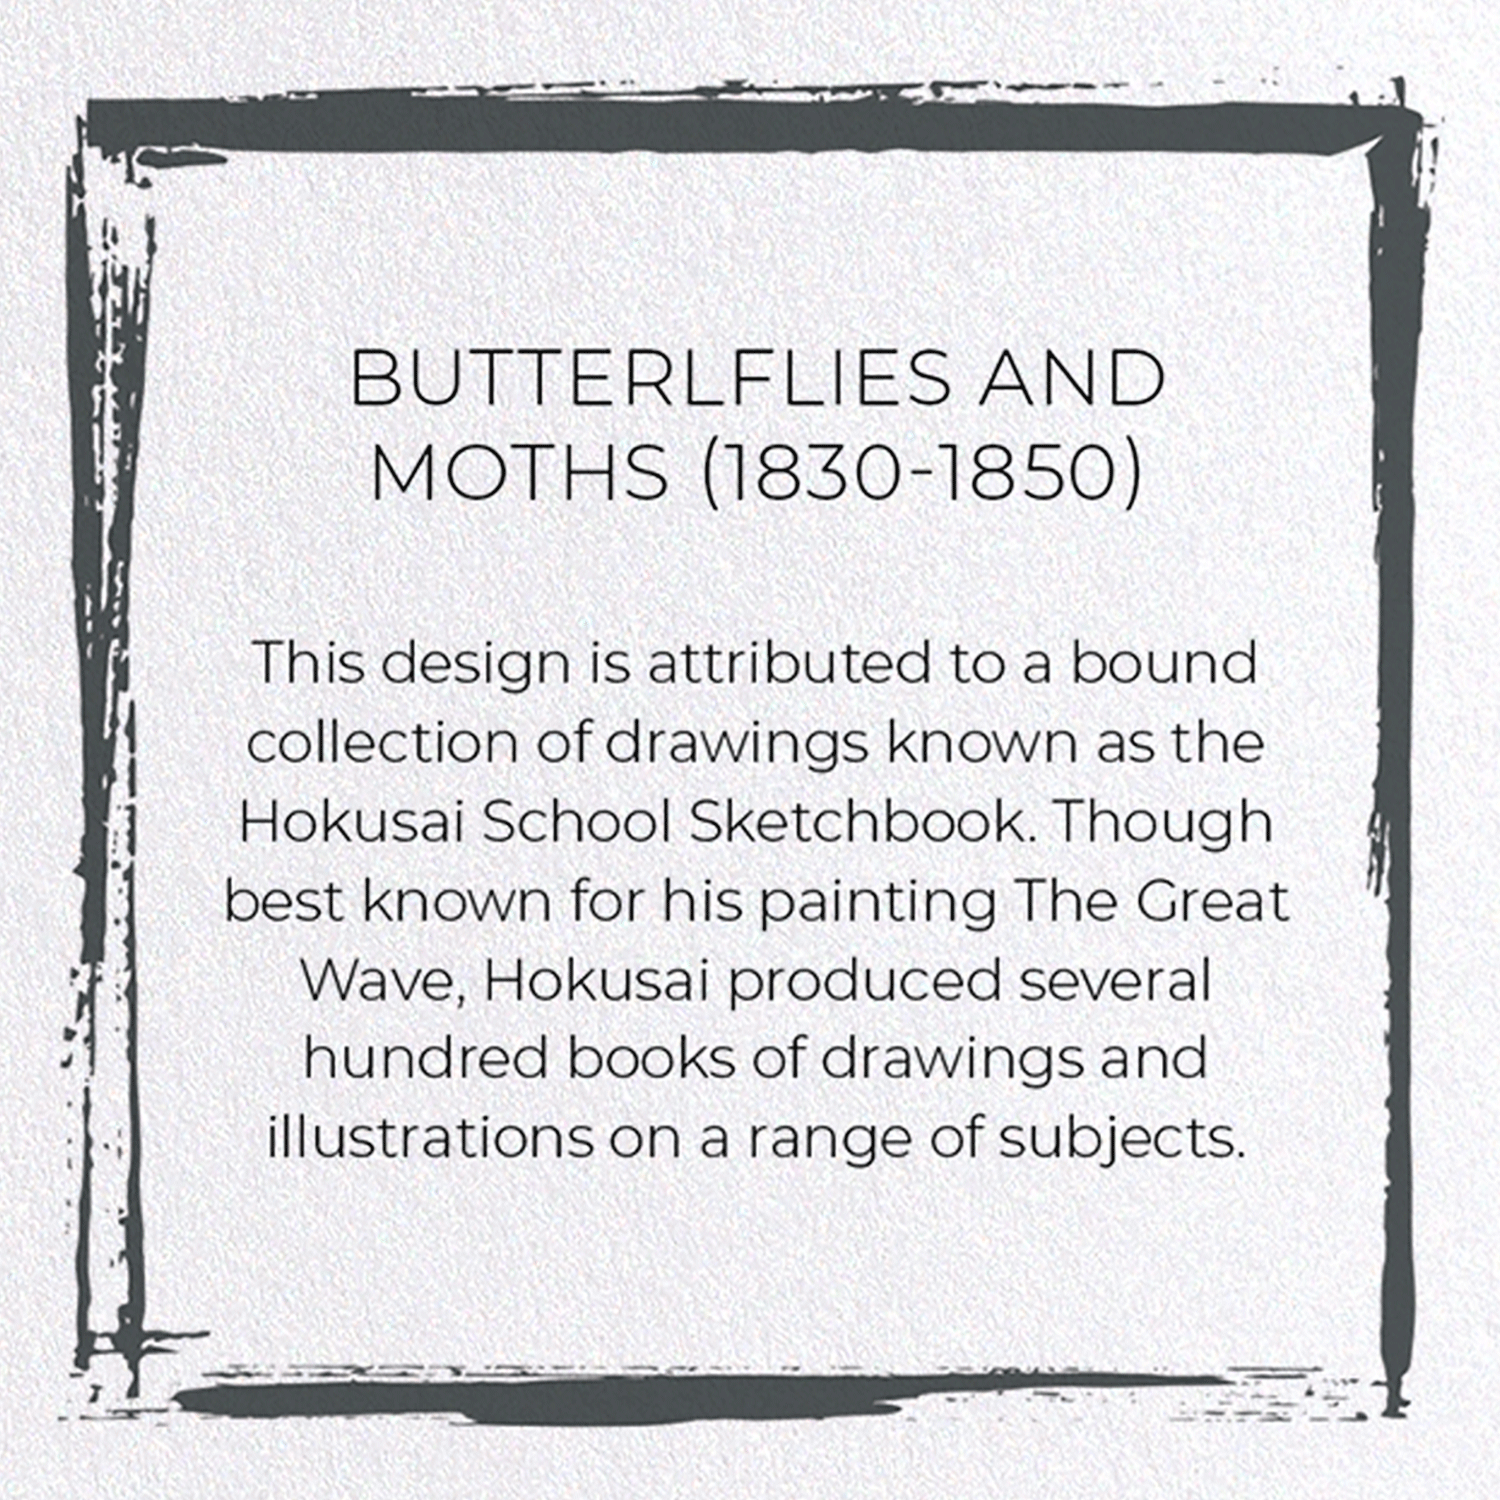 BUTTERLFLIES AND MOTHS (1830-1850)